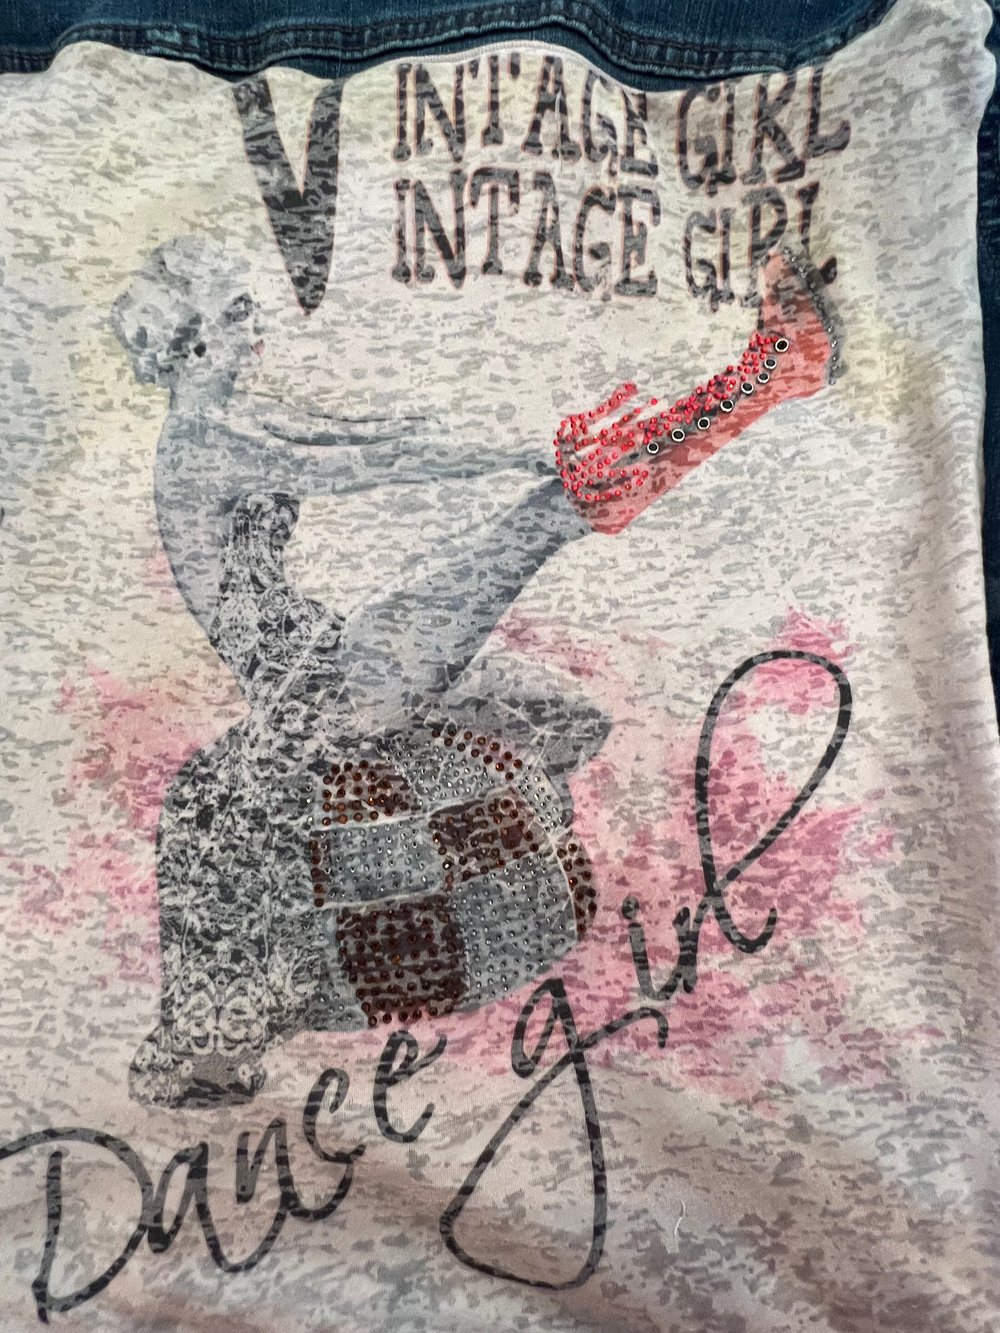 Vintage Denim Star Print Jacket Dancing Country Girl